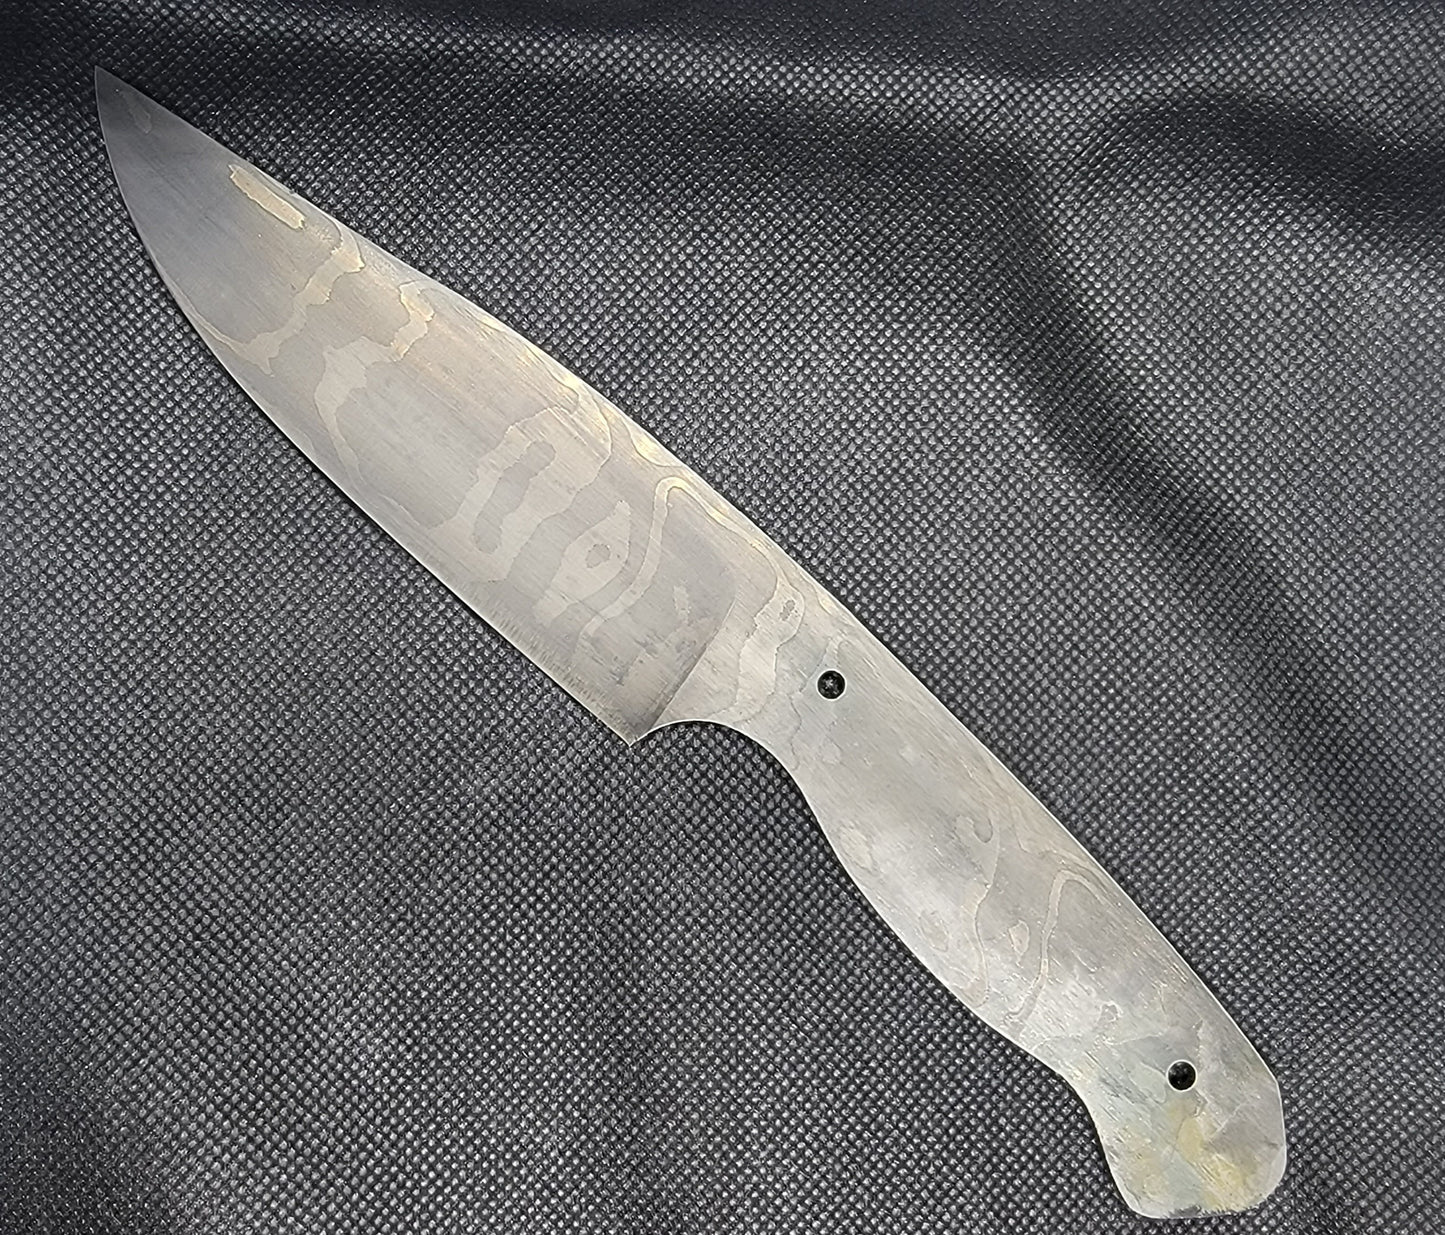 Custom Damascus Knives